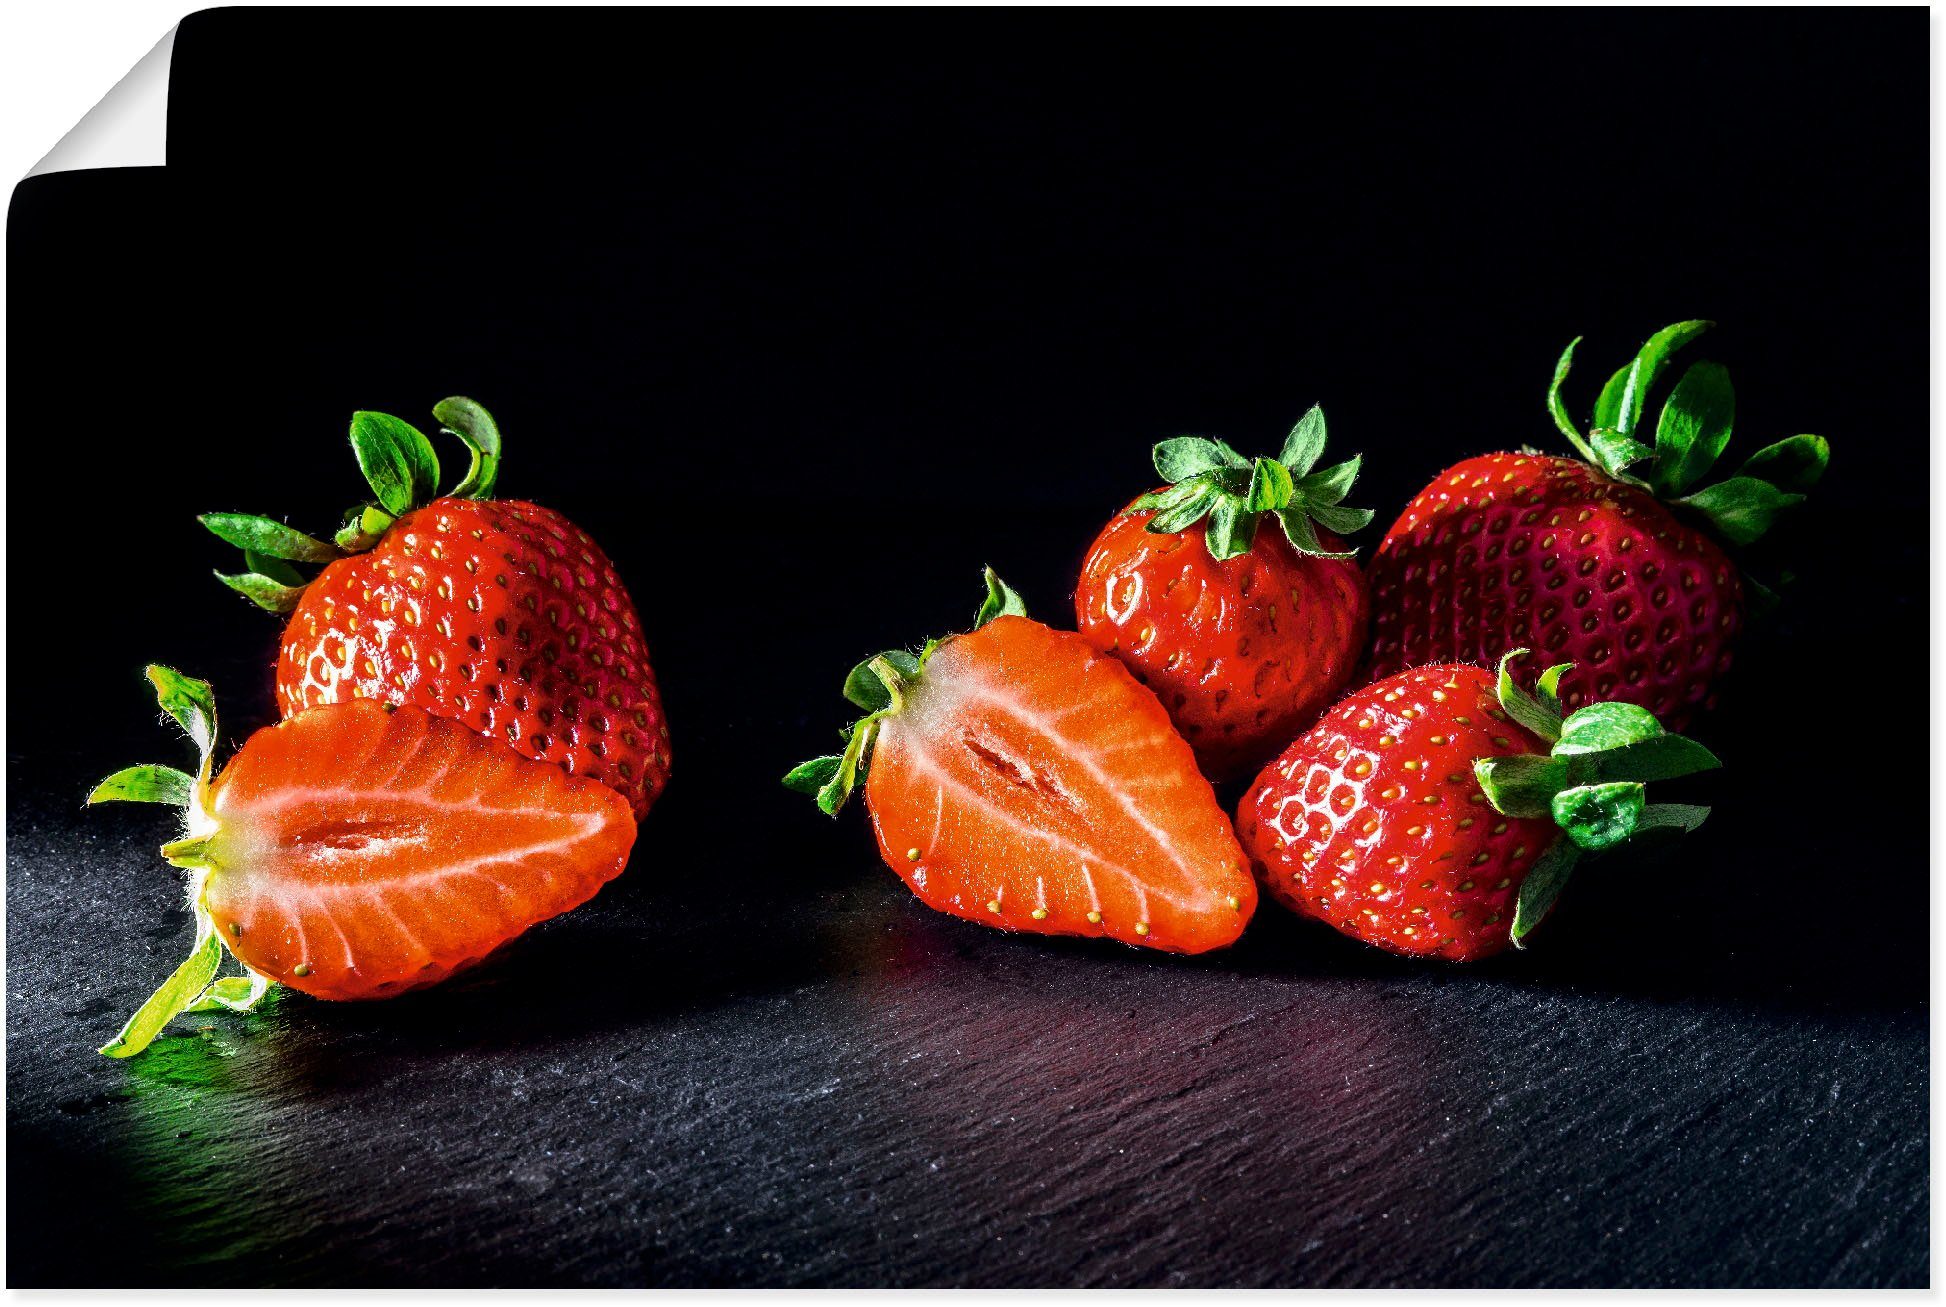 Artland Artprint Erdbeeren, süß und fruchtig in vele afmetingen & productsoorten - artprint van aluminium / artprint voor buiten, artprint op linnen, poster, muursticker / wandfoli